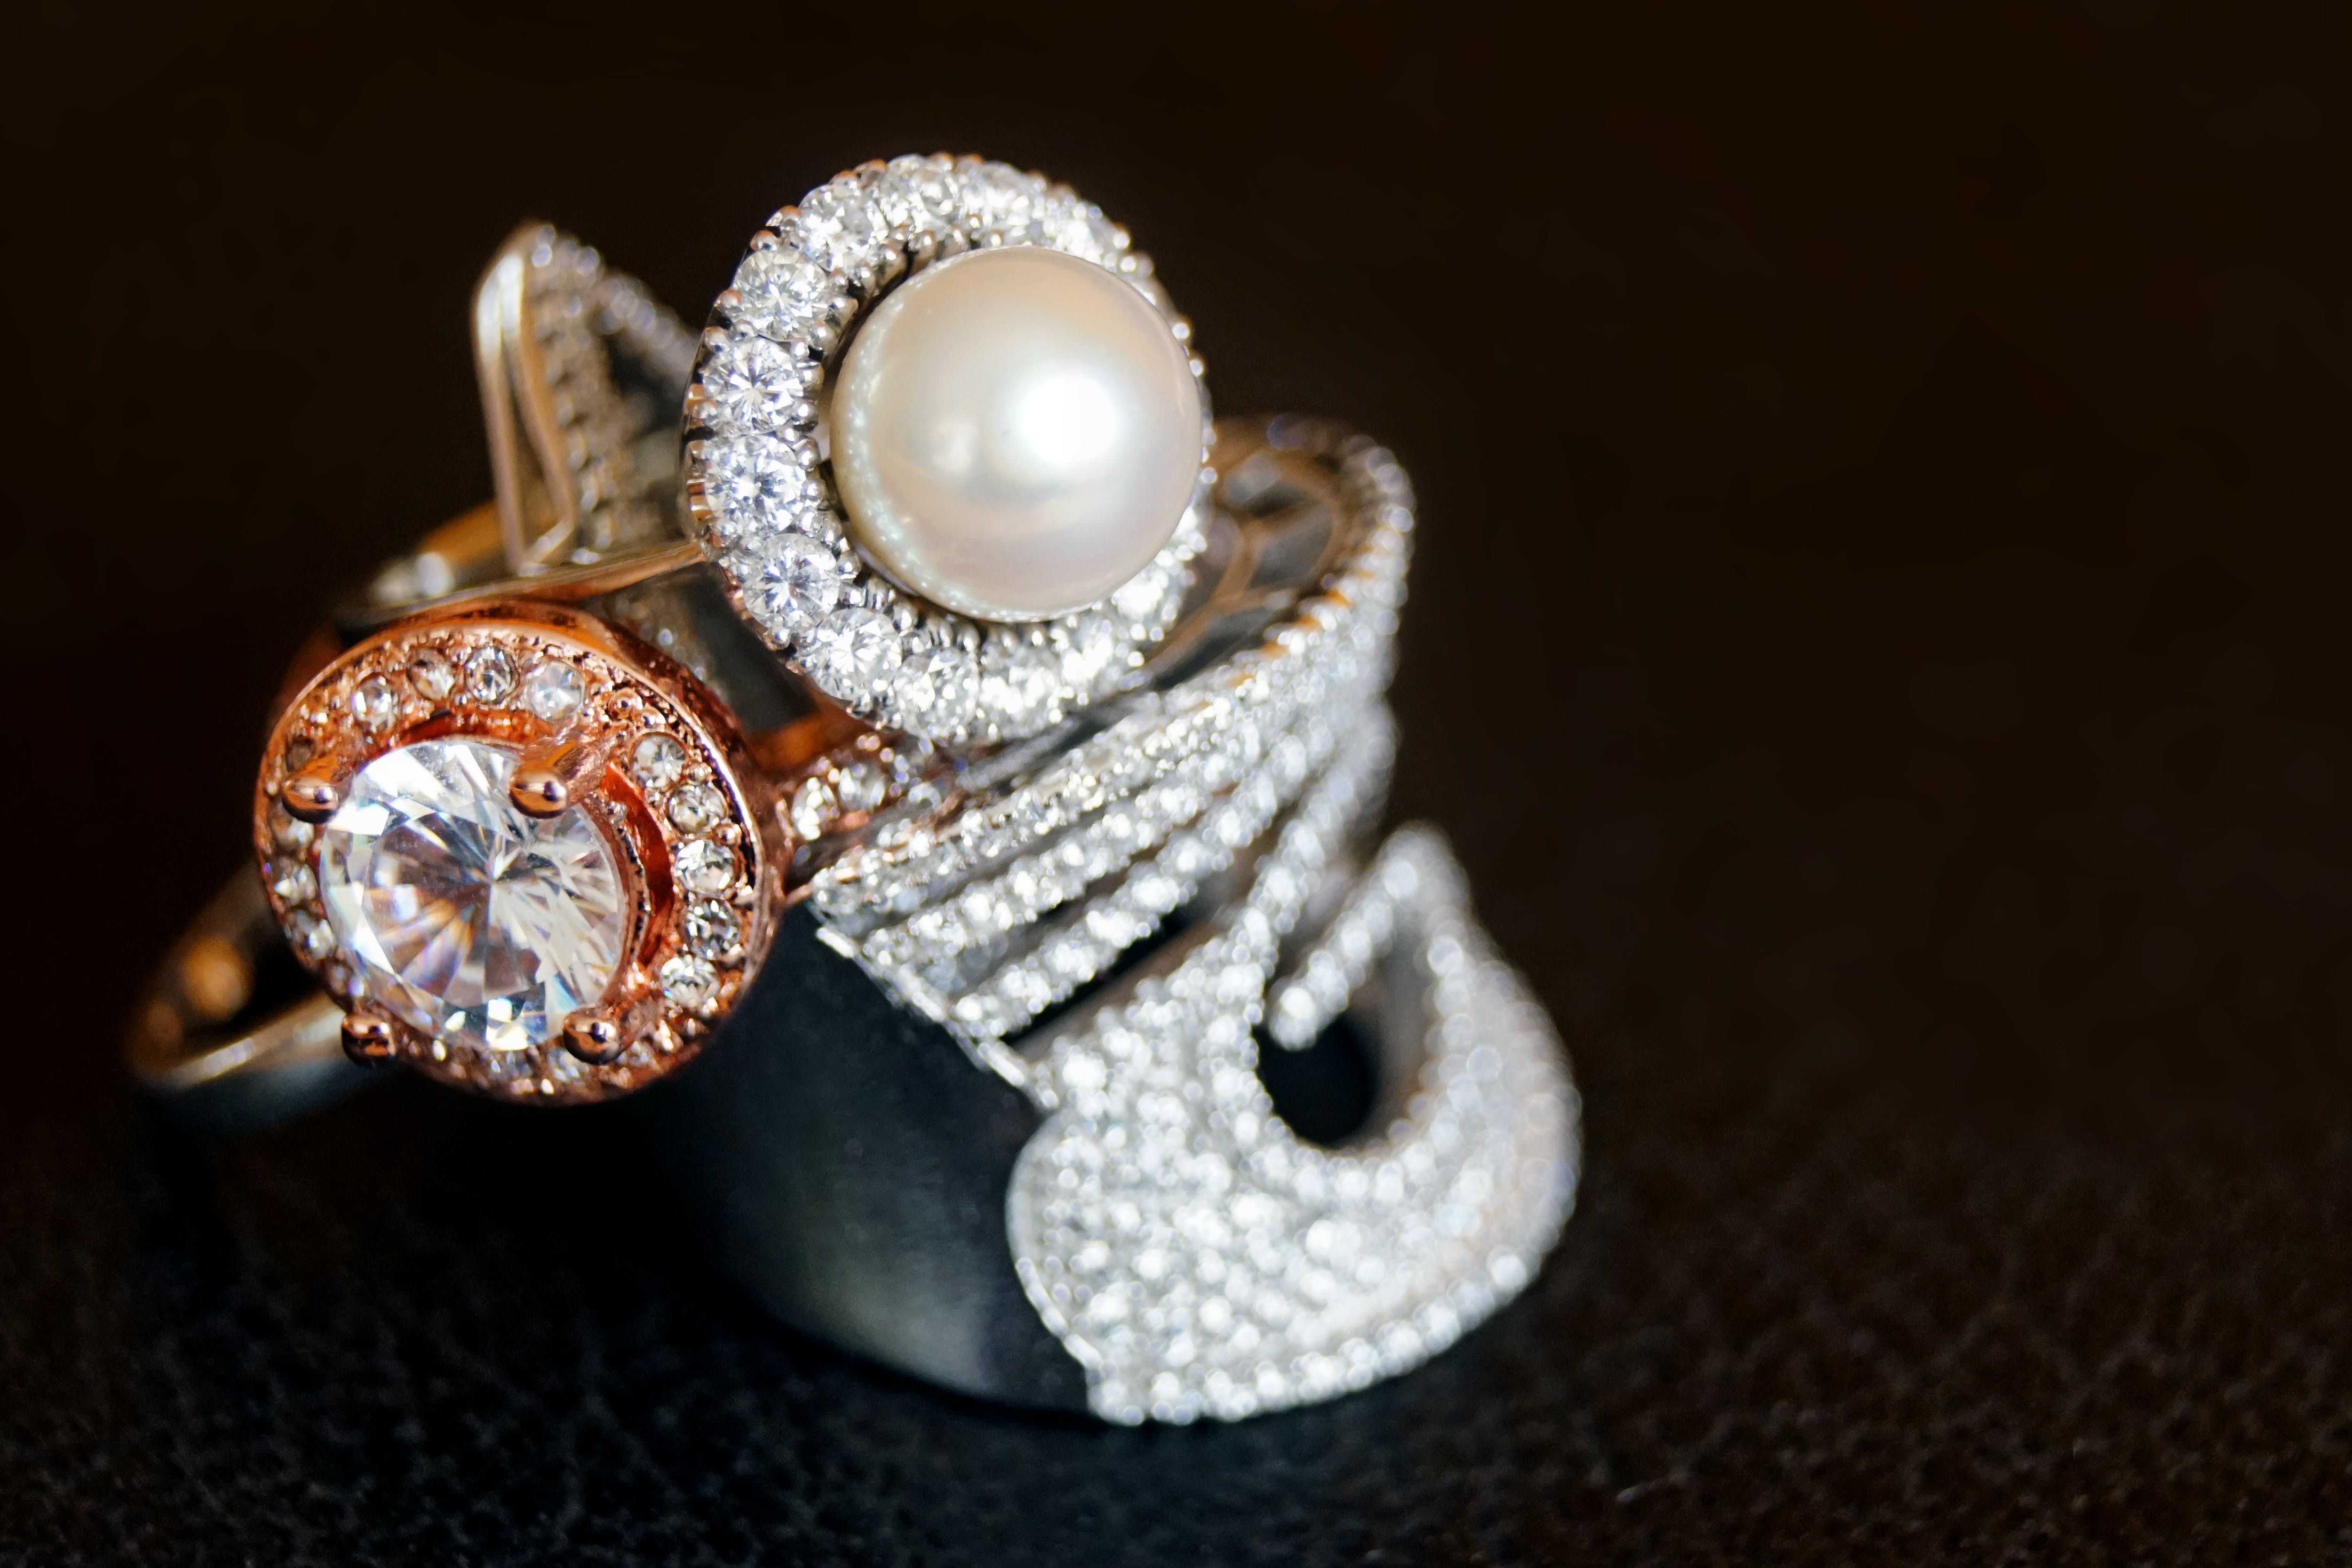 Ein silberfarbener Ring mit klarem Edelstein und weißer Perle | Quelle: Pexels